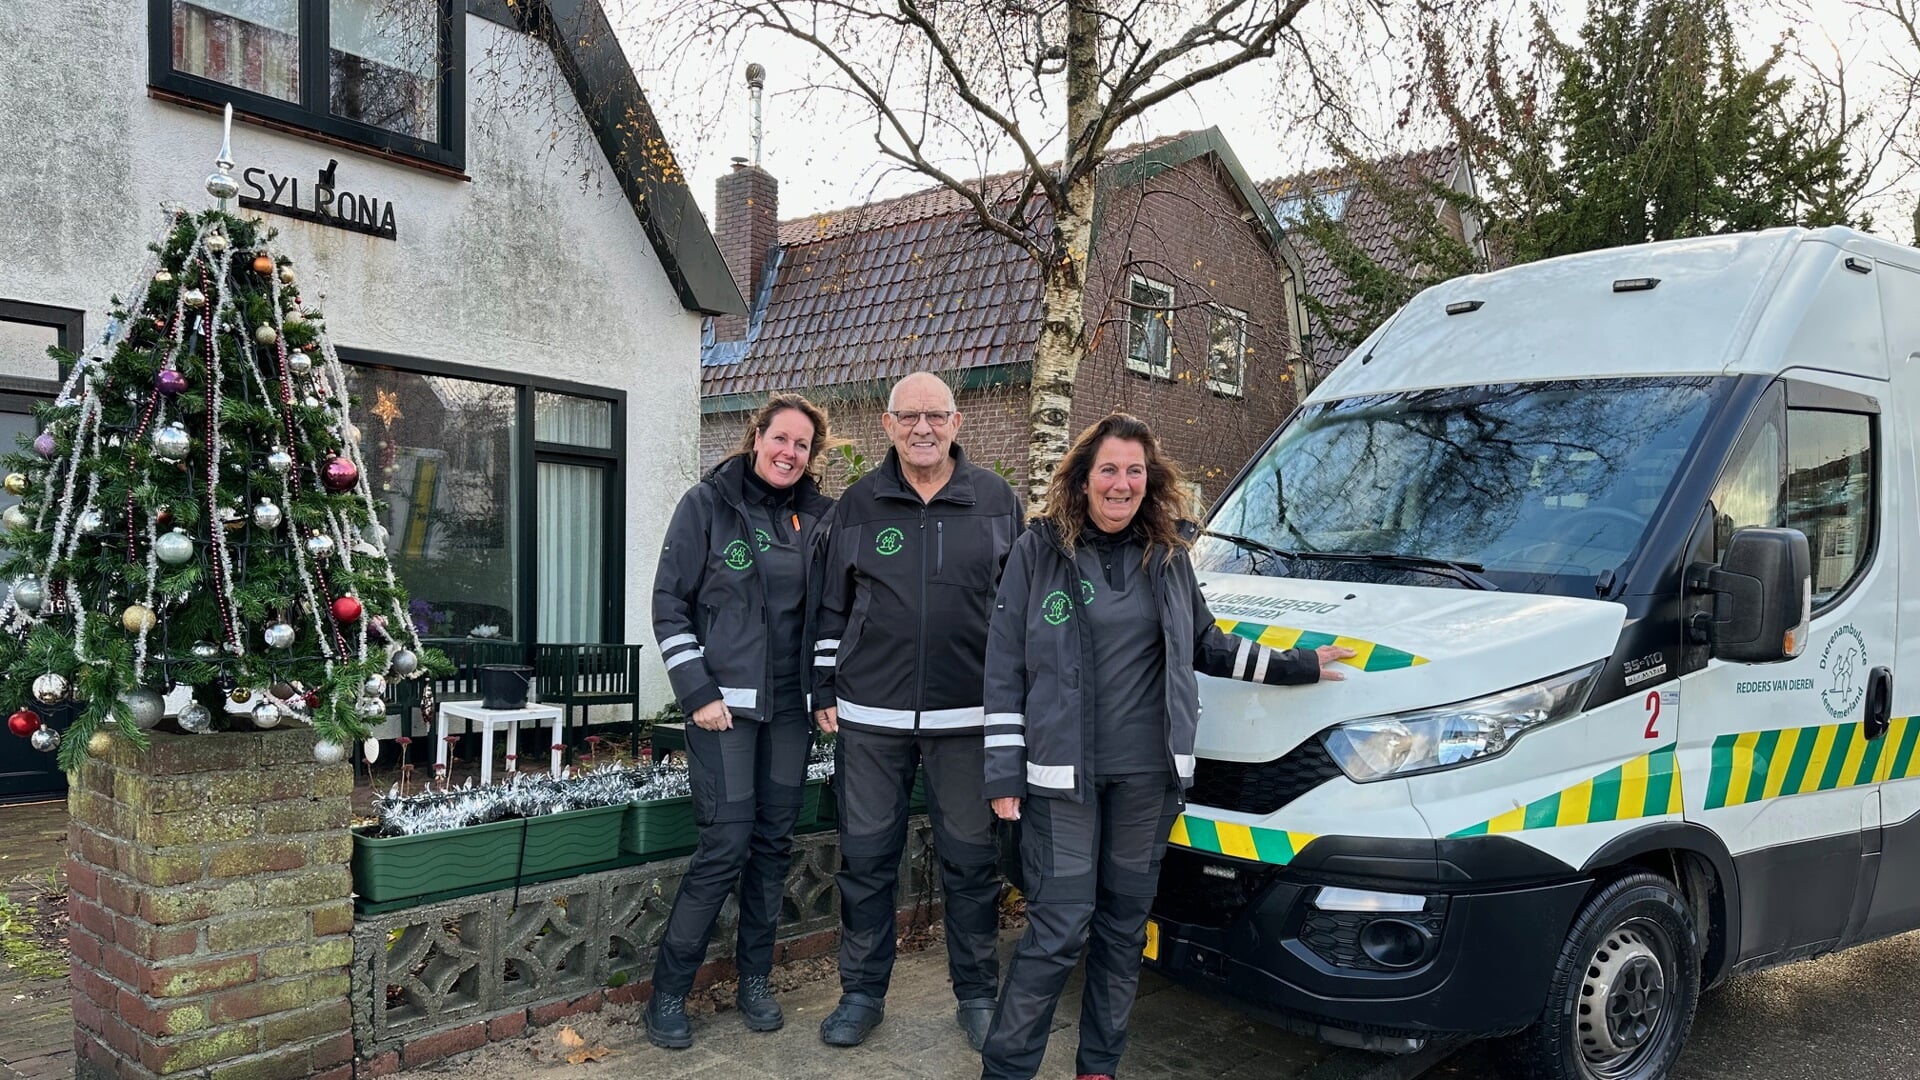 Esther Vink, Rom Zwaan en Margreet Kraaijer van Stichting Dierenambulance Kennemerland dankbaar voor elke donatie aan het Kerstdorp!